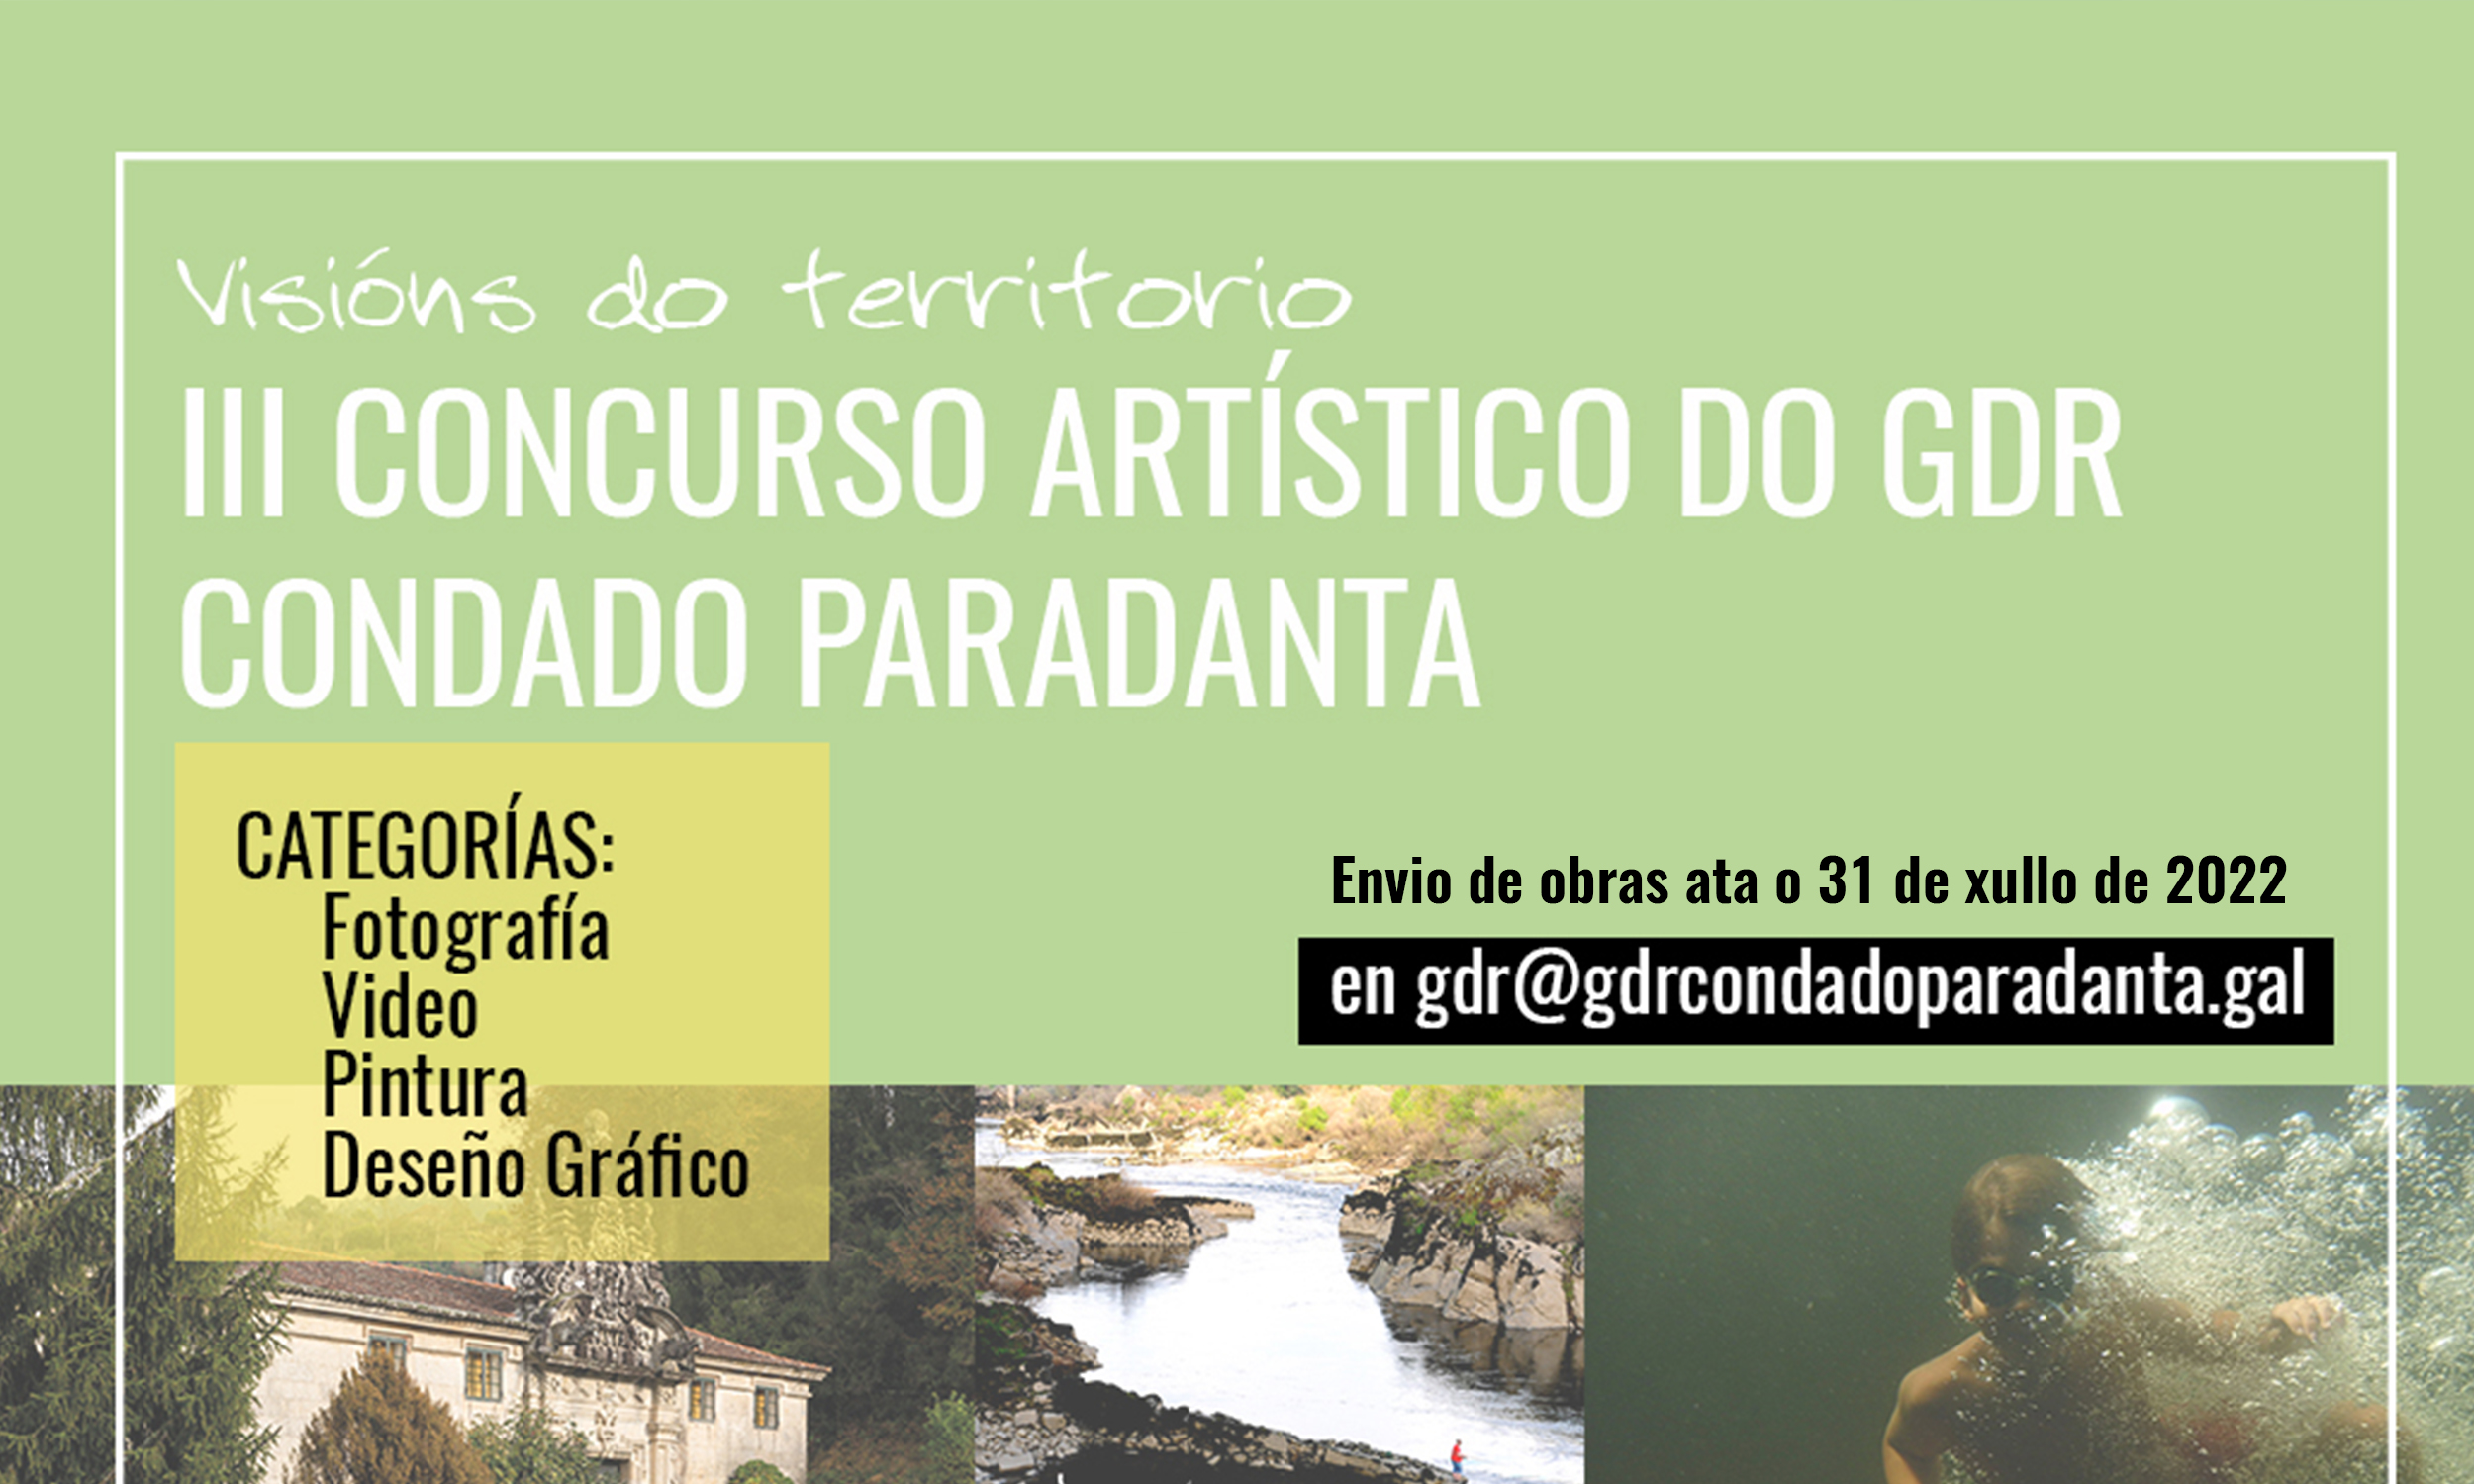 Neste momento estás a ver Ampliación do prazo para participar no III Concurso Artístico do  Condado Paradanta